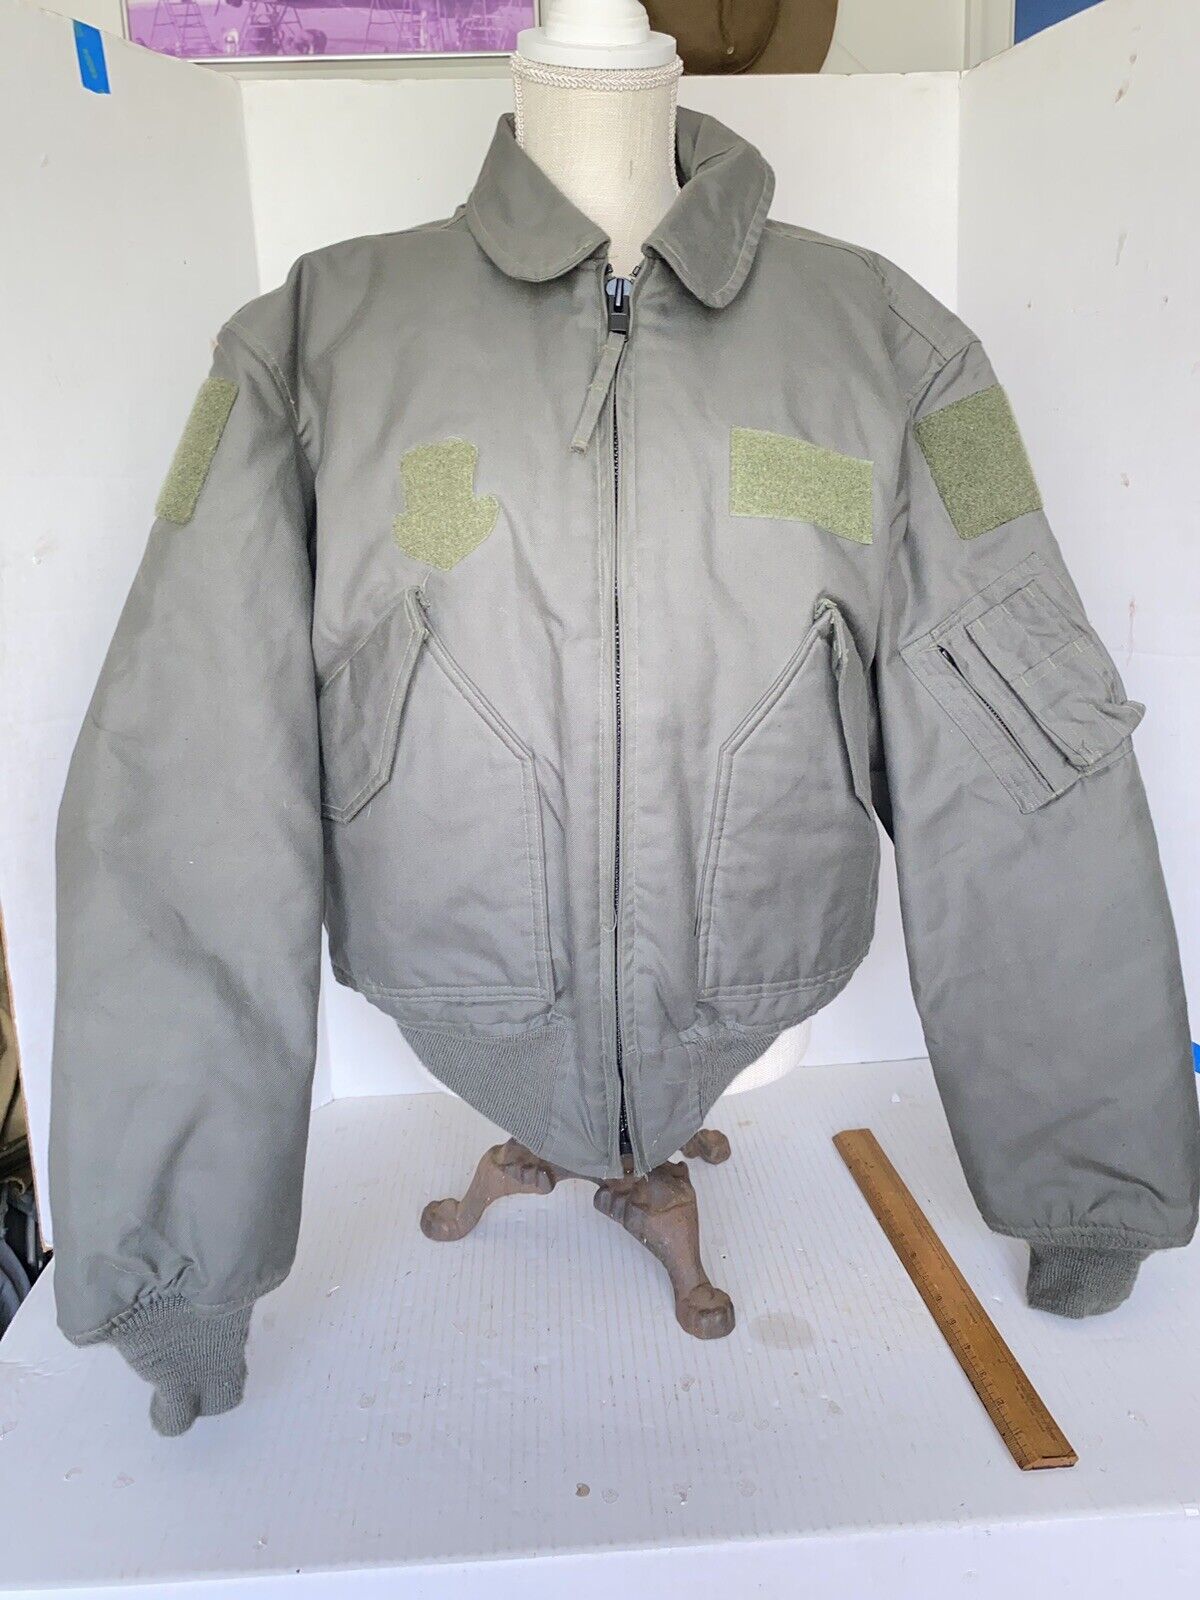 CWU-45/P  flight jacket sz large excellent condition